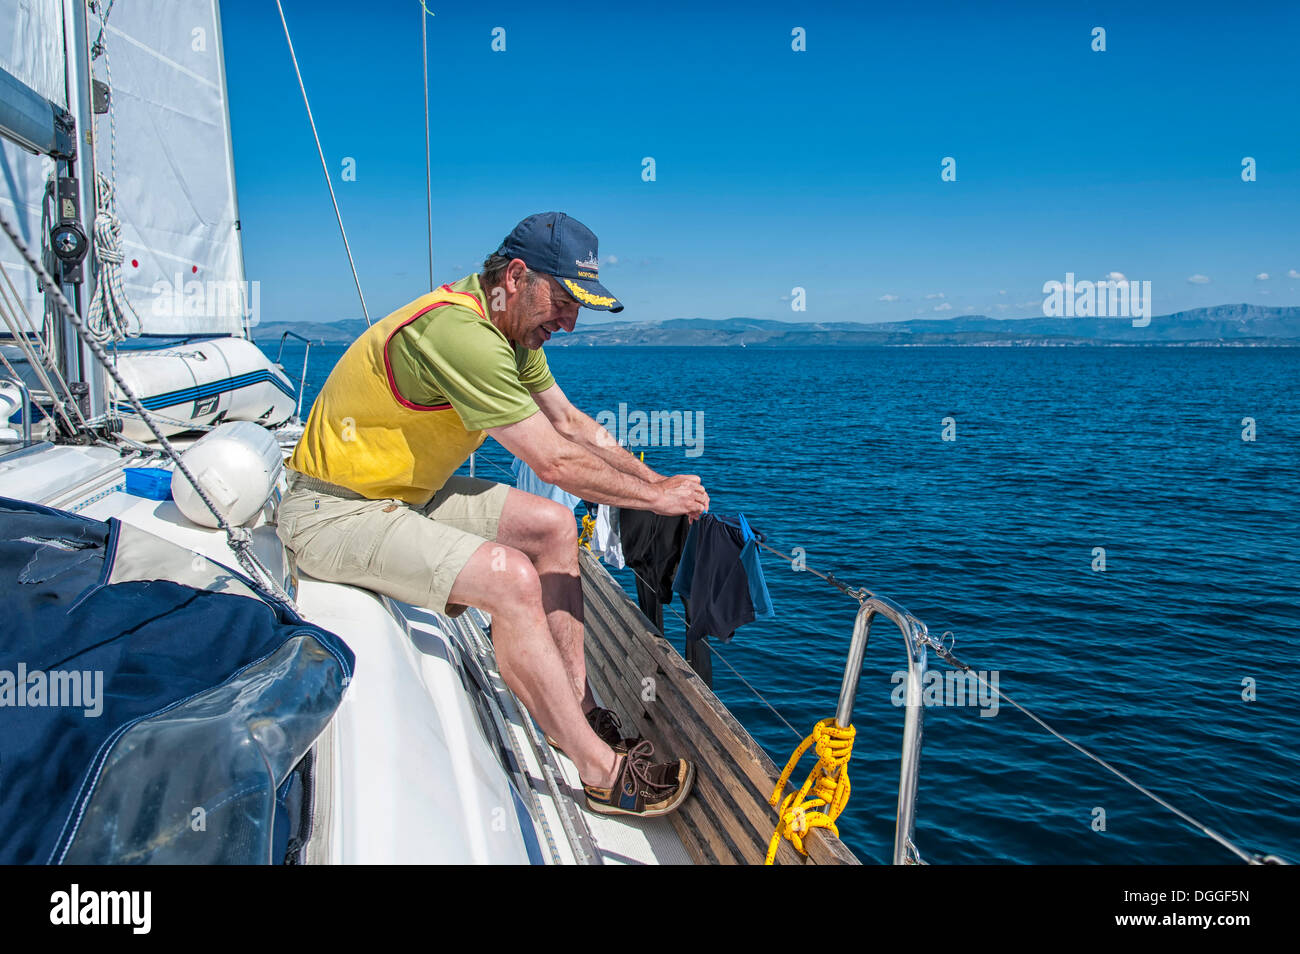 Man putting up blanchisserie frais sur la rampe d'un yacht à voile, Mer Adriatique, la Croatie, l'Europe Banque D'Images